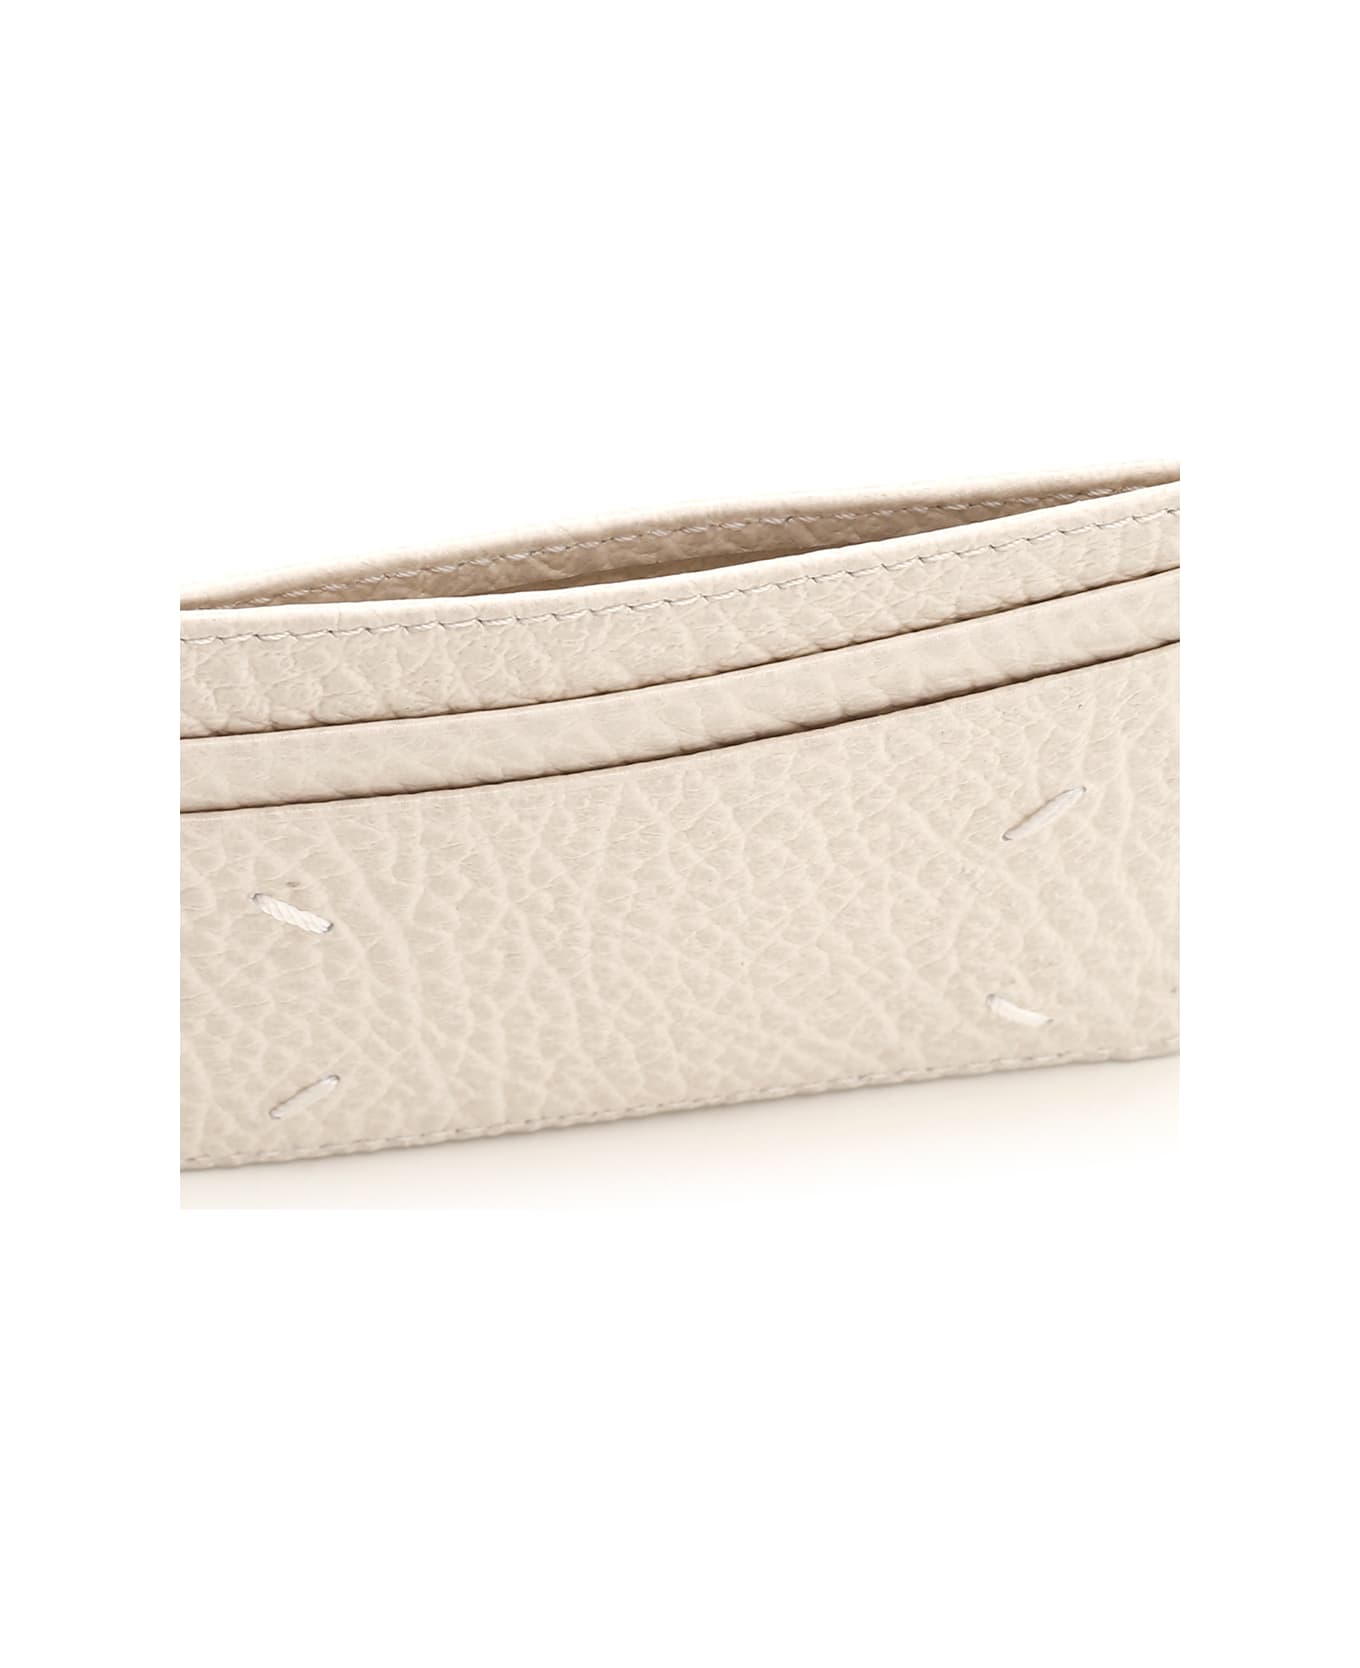 Maison Margiela Stitching' Leather Card Holder - Grey 財布